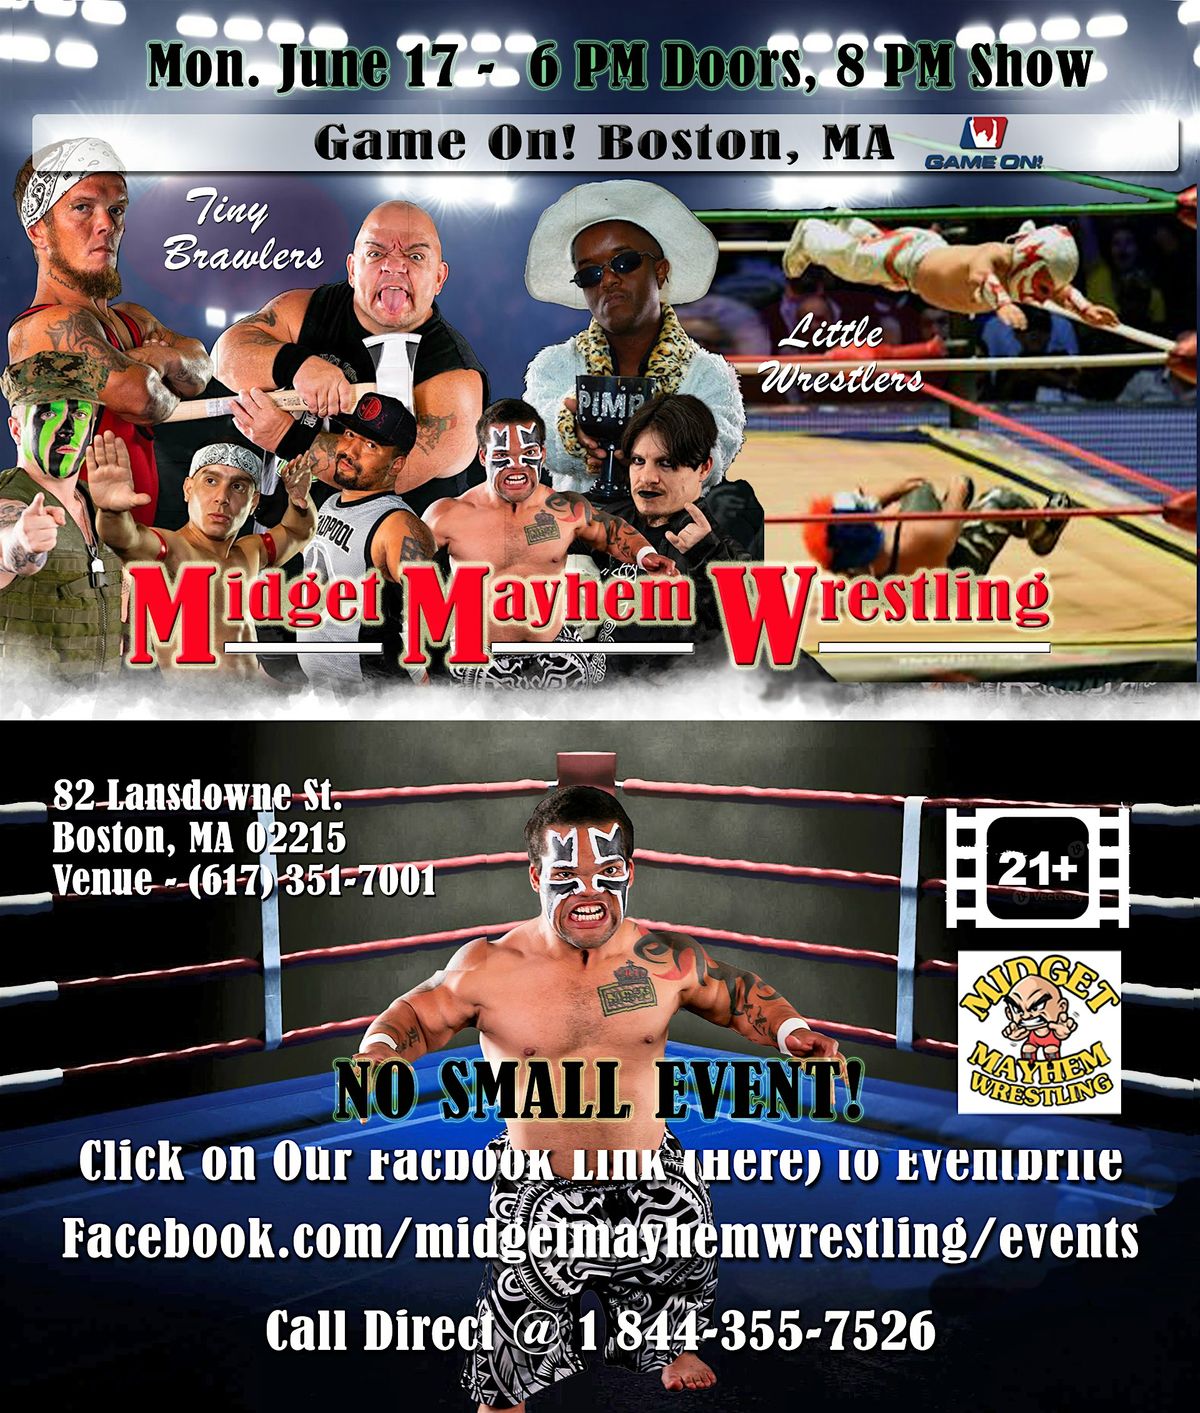 Midget Mayhem Wrestling Goes Wild - Fenway Boston 21+